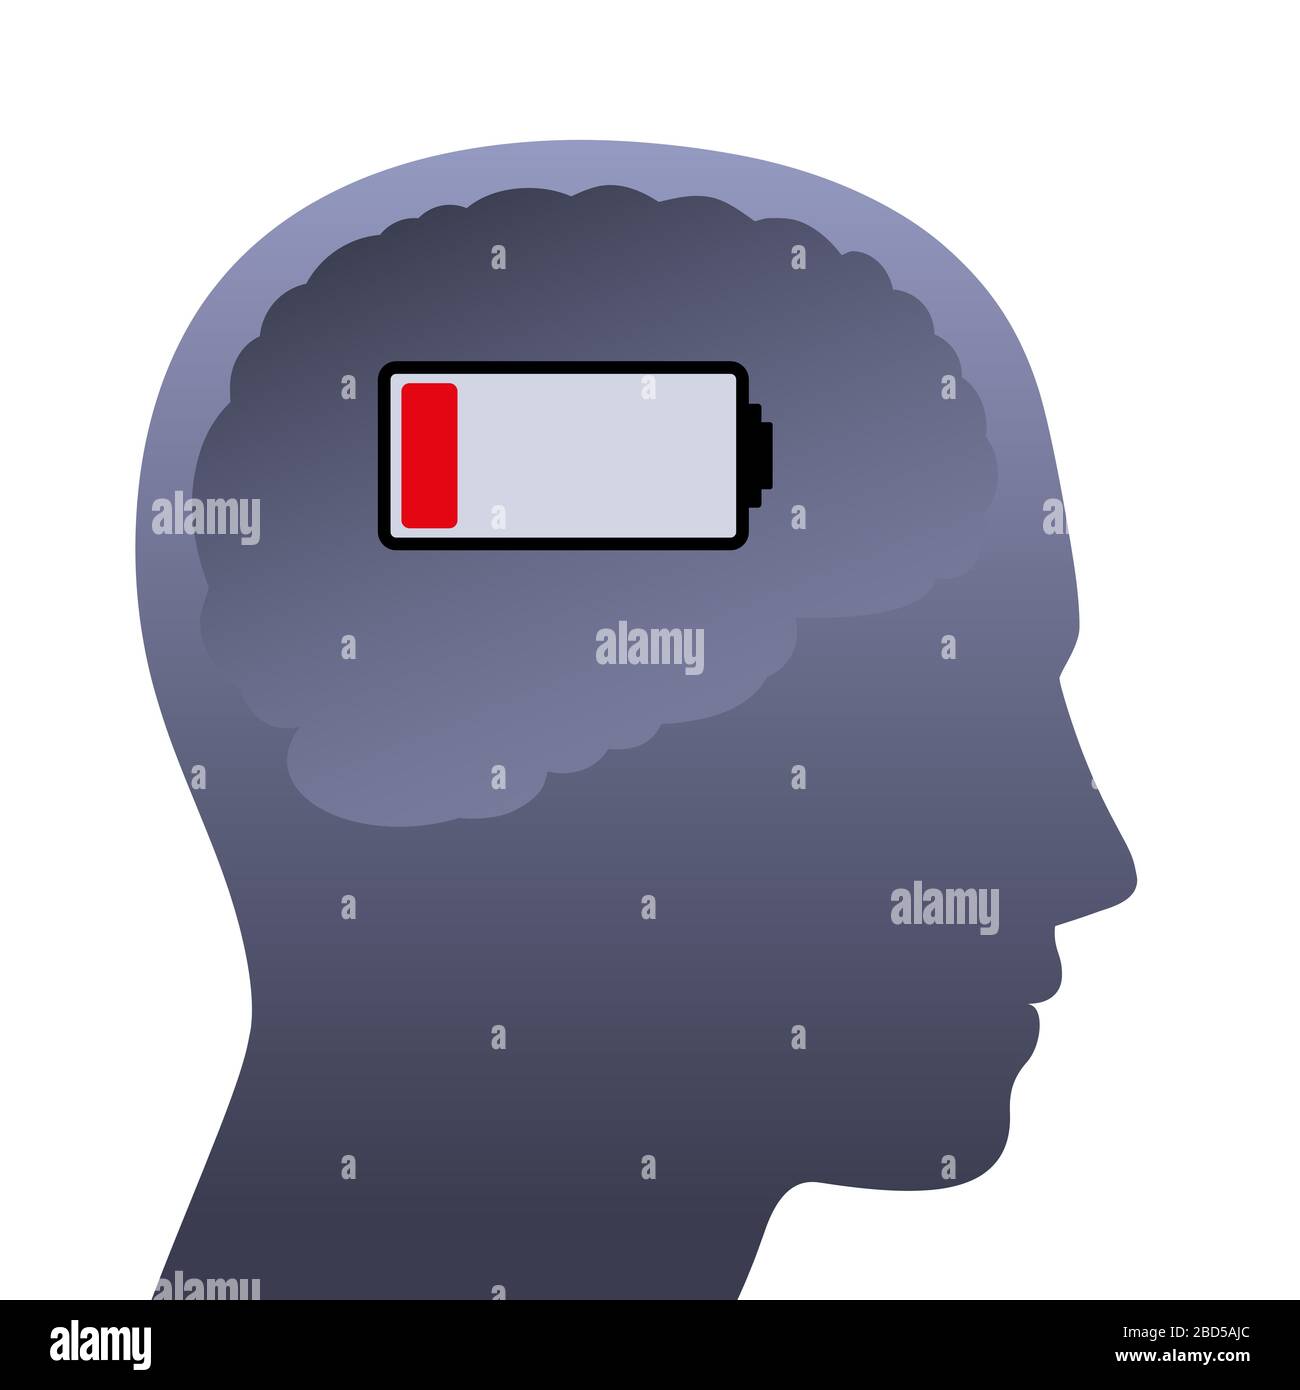 Cervello umano con batteria scarica. Testa vuota a bassa potenza, simbolica per stress, depressione, burnout, frustrazione, stanchezza, umore mentale negativo. Foto Stock